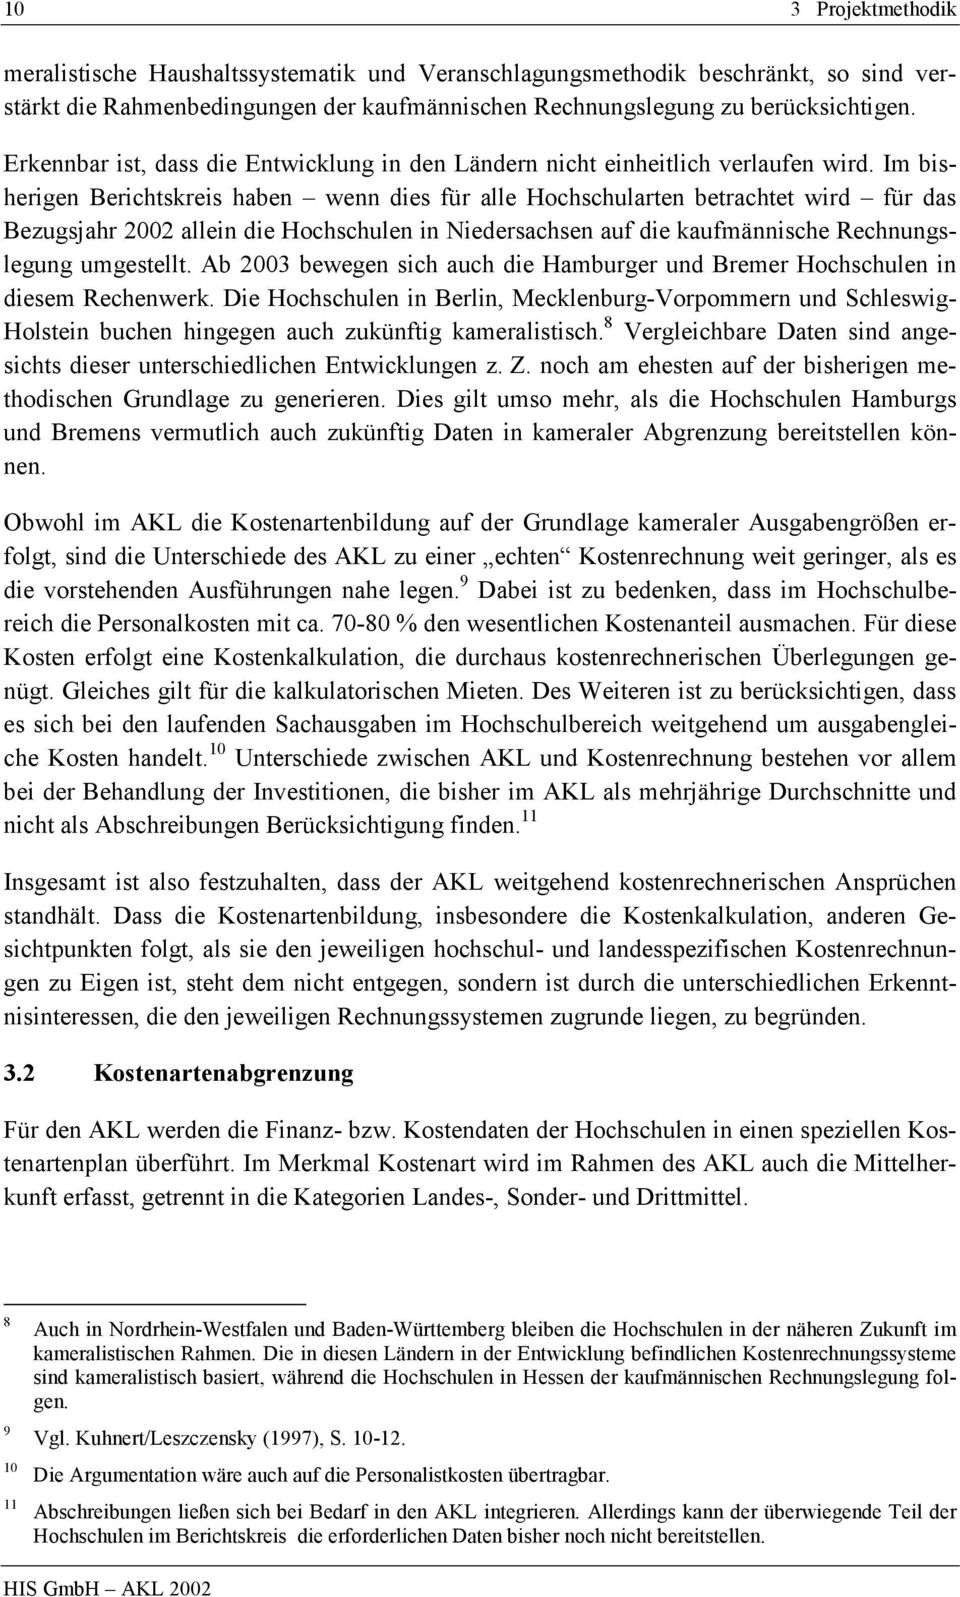 Im bisherigen Berichtskreis haben wenn dies für alle Hochschularten betrachtet wird für das Bezugsjahr 2002 allein die Hochschulen in Niedersachsen auf die kaufmännische Rechnungslegung umgestellt.